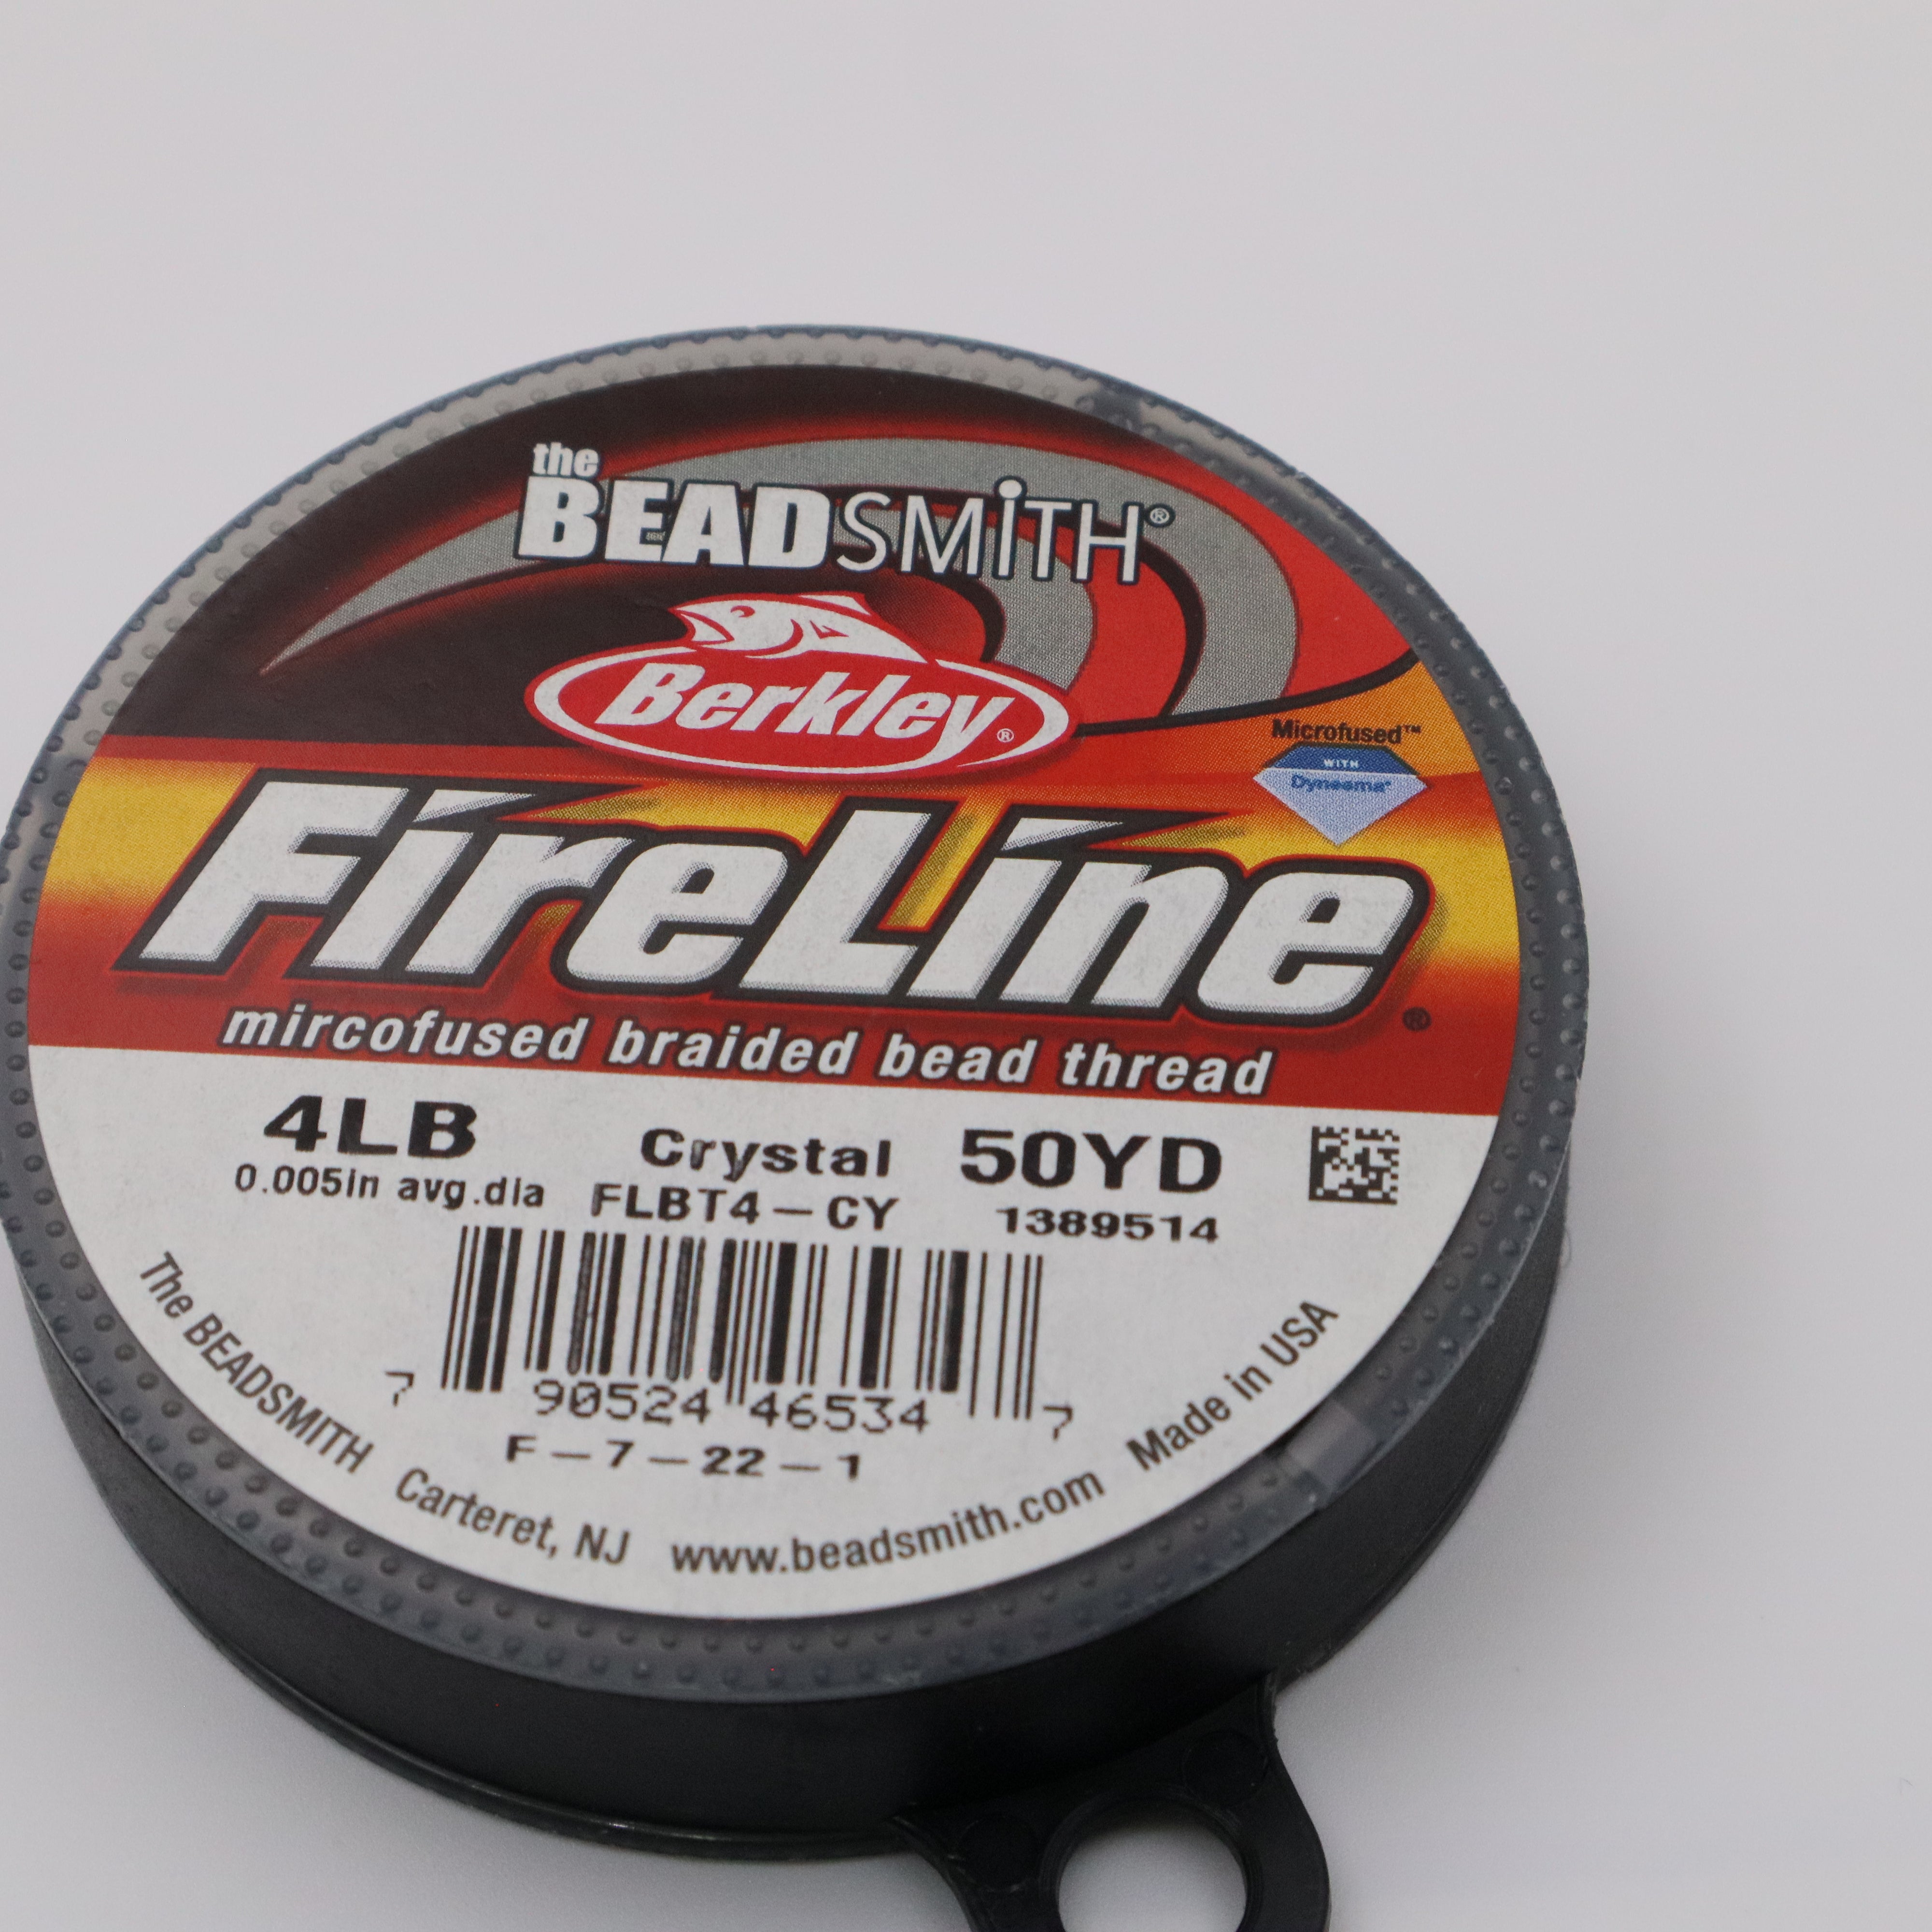 Fireline Braided Bead Thread - Crystal 4lb - 50yd